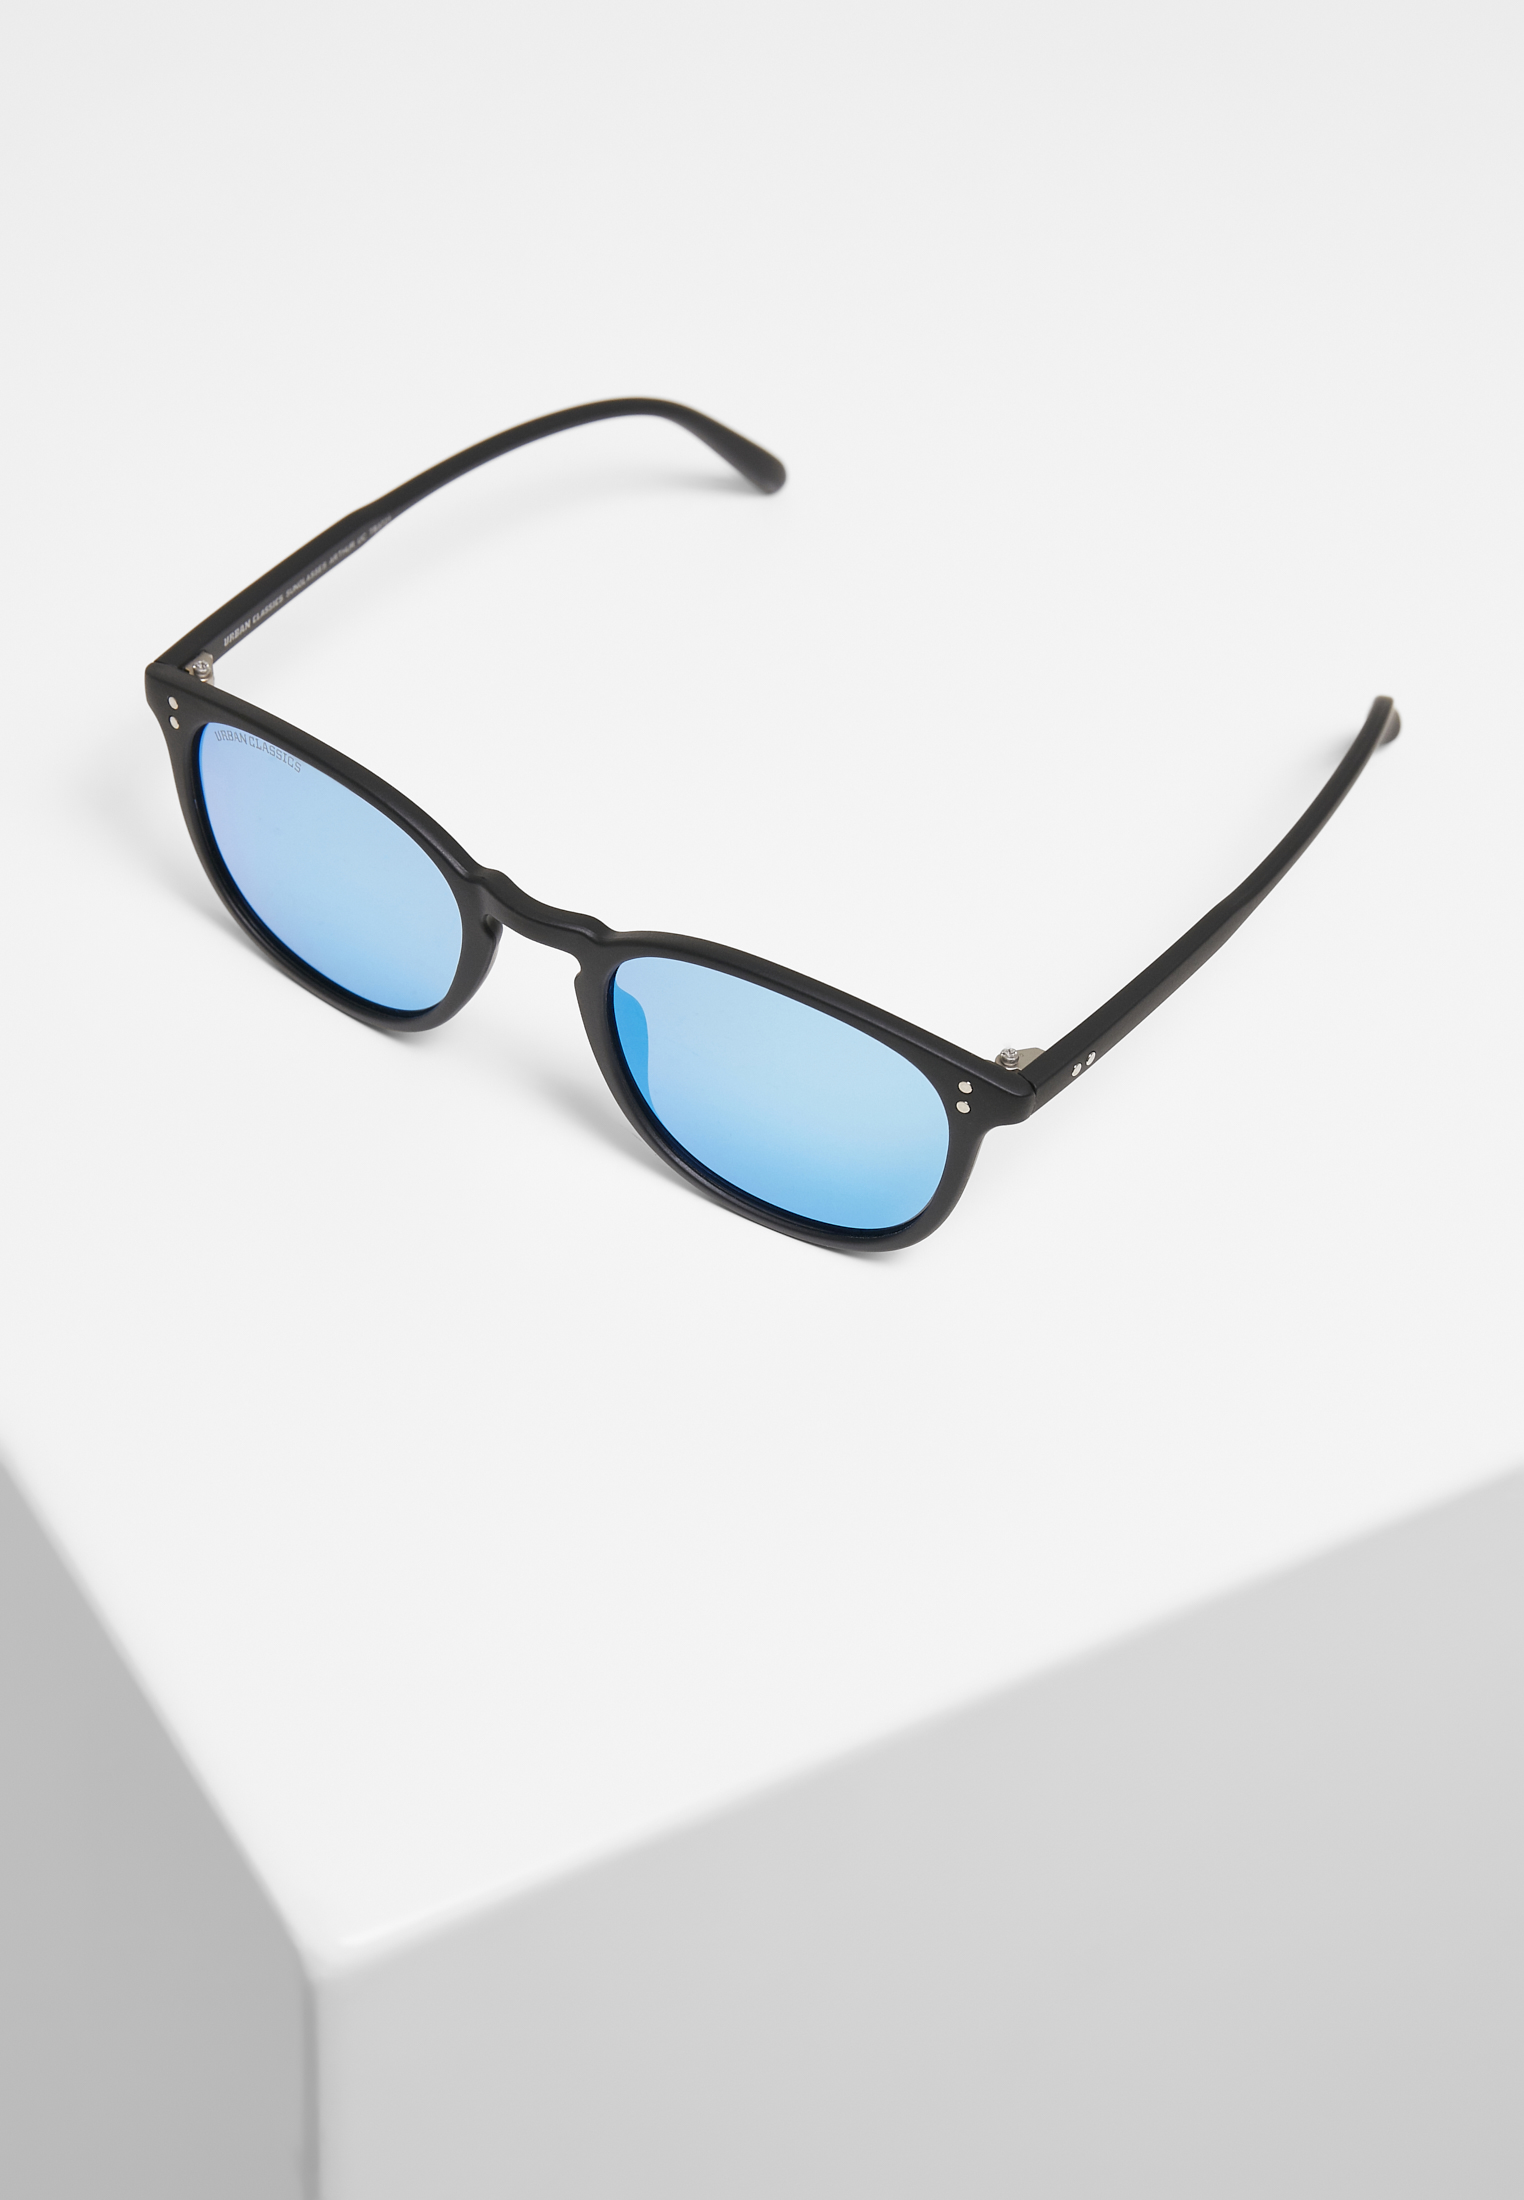 Sonnenbrillen Sunglasses Arthur UC in Farbe black/blue